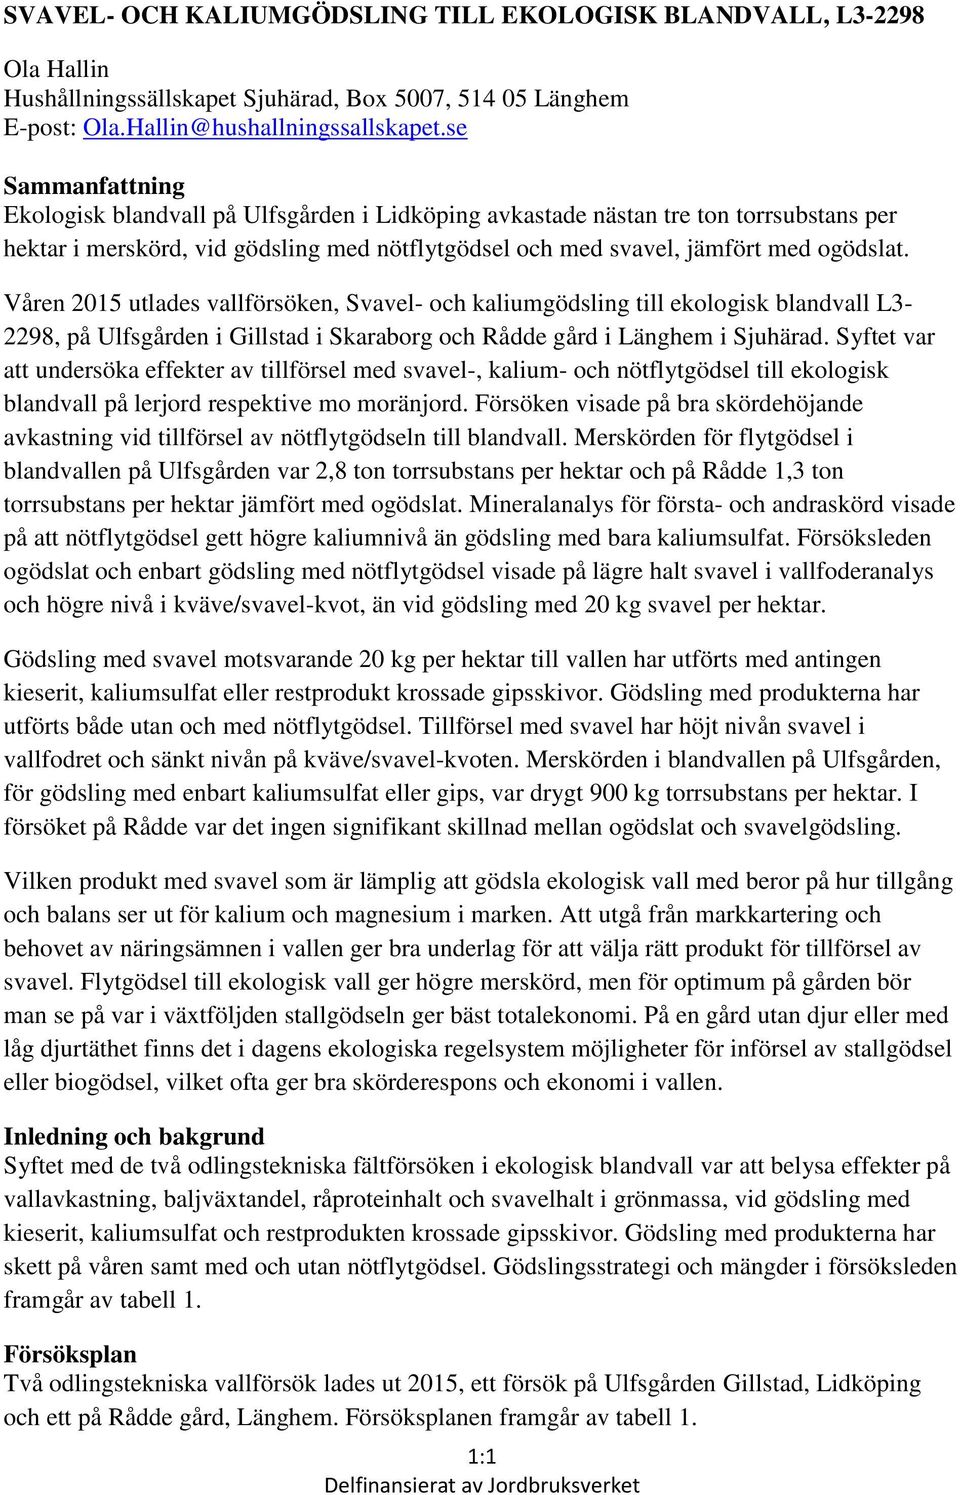 Våren 2015 utlades vallförsöken, Svavel- och kaliumgödsling till ekologisk blandvall L3-2298, på Ulfsgården i Gillstad i Skaraborg och Rådde gård i Länghem i Sjuhärad.